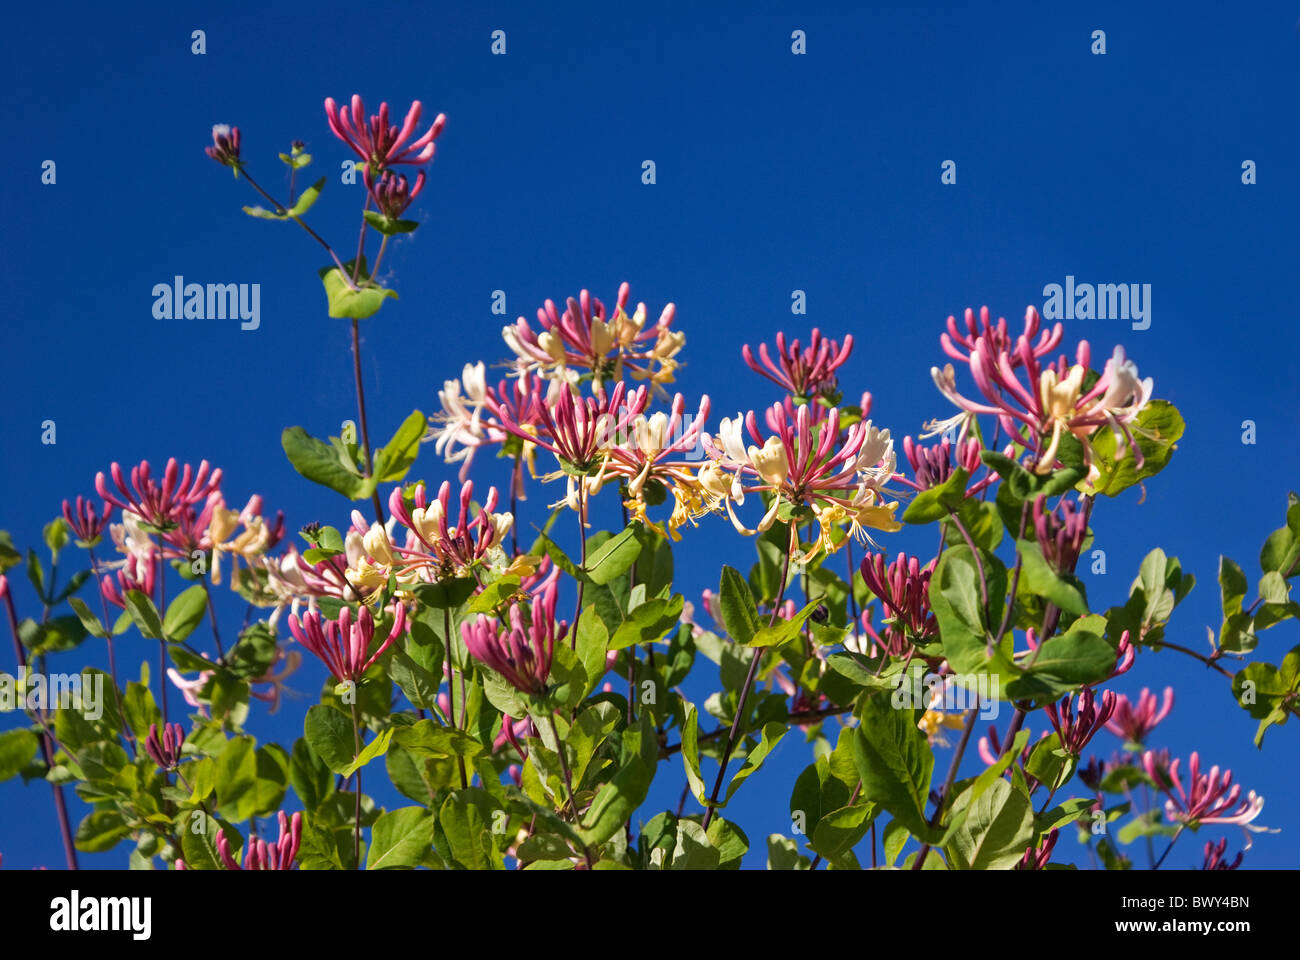 Honeysuckle flowering against blue skies Stock Photo